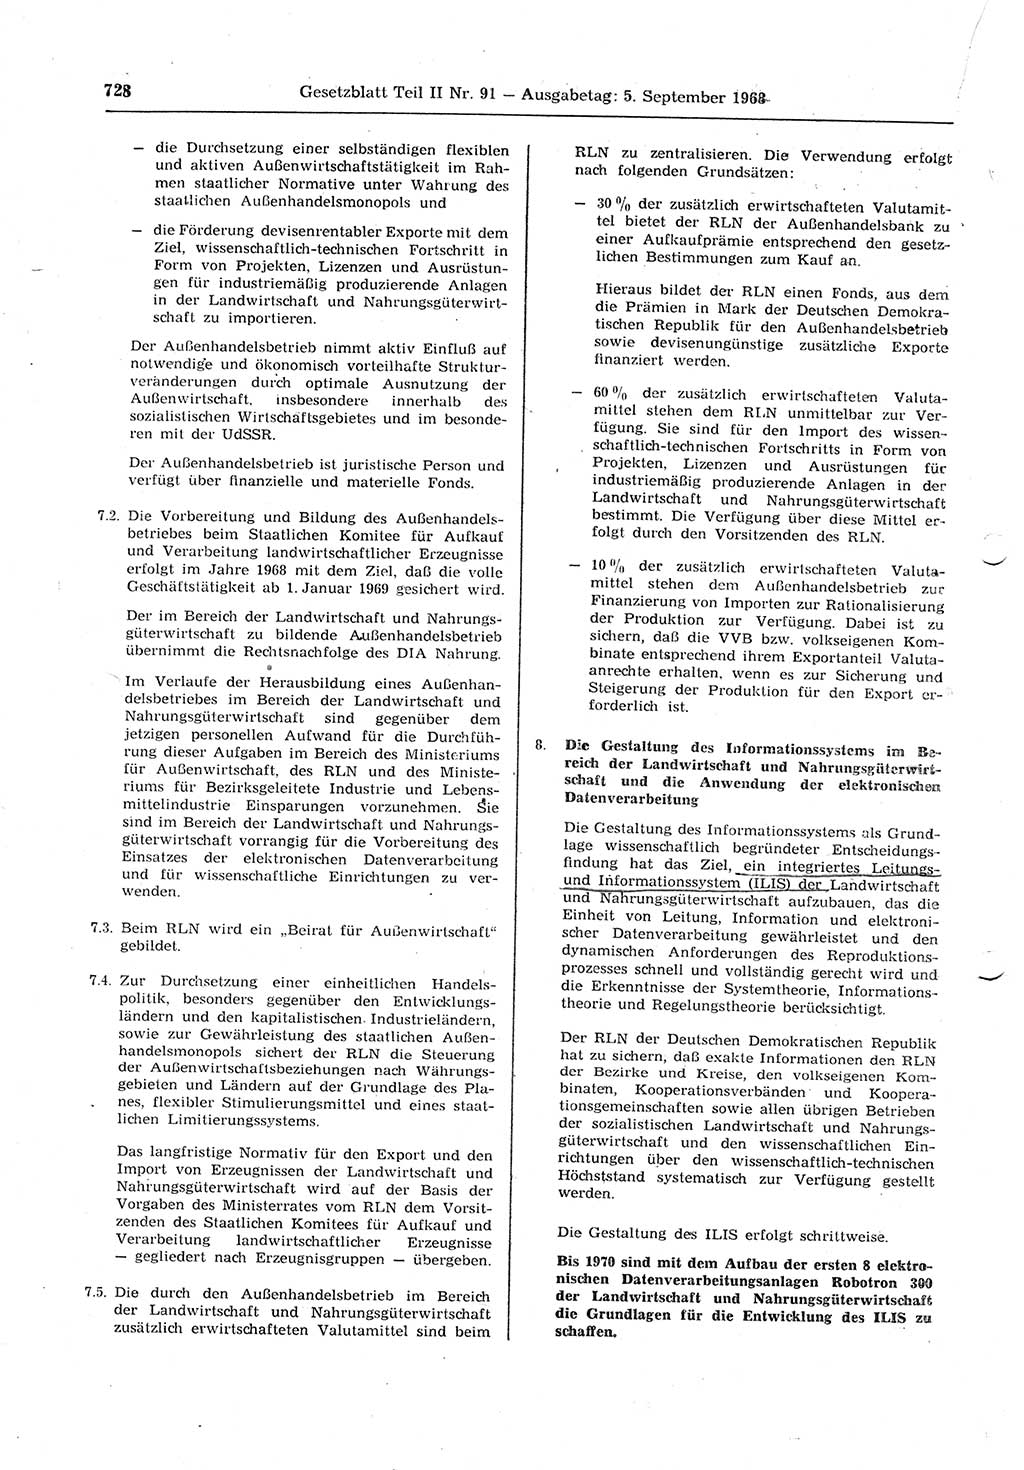 Gesetzblatt (GBl.) der Deutschen Demokratischen Republik (DDR) Teil ⅠⅠ 1968, Seite 728 (GBl. DDR ⅠⅠ 1968, S. 728)